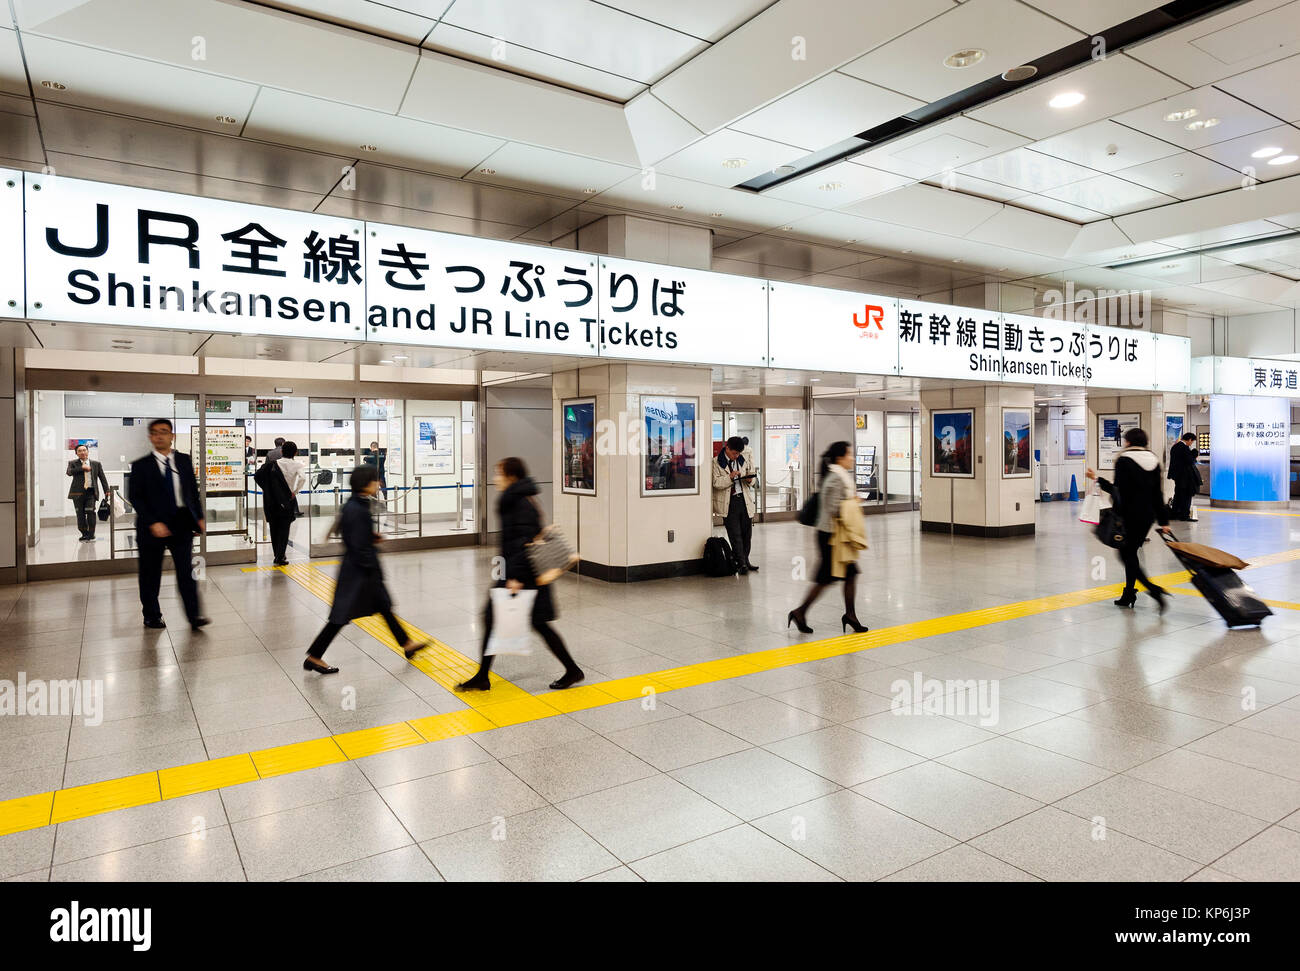 Shinkansen Biglietteria stazione ferroviaria Foto Stock